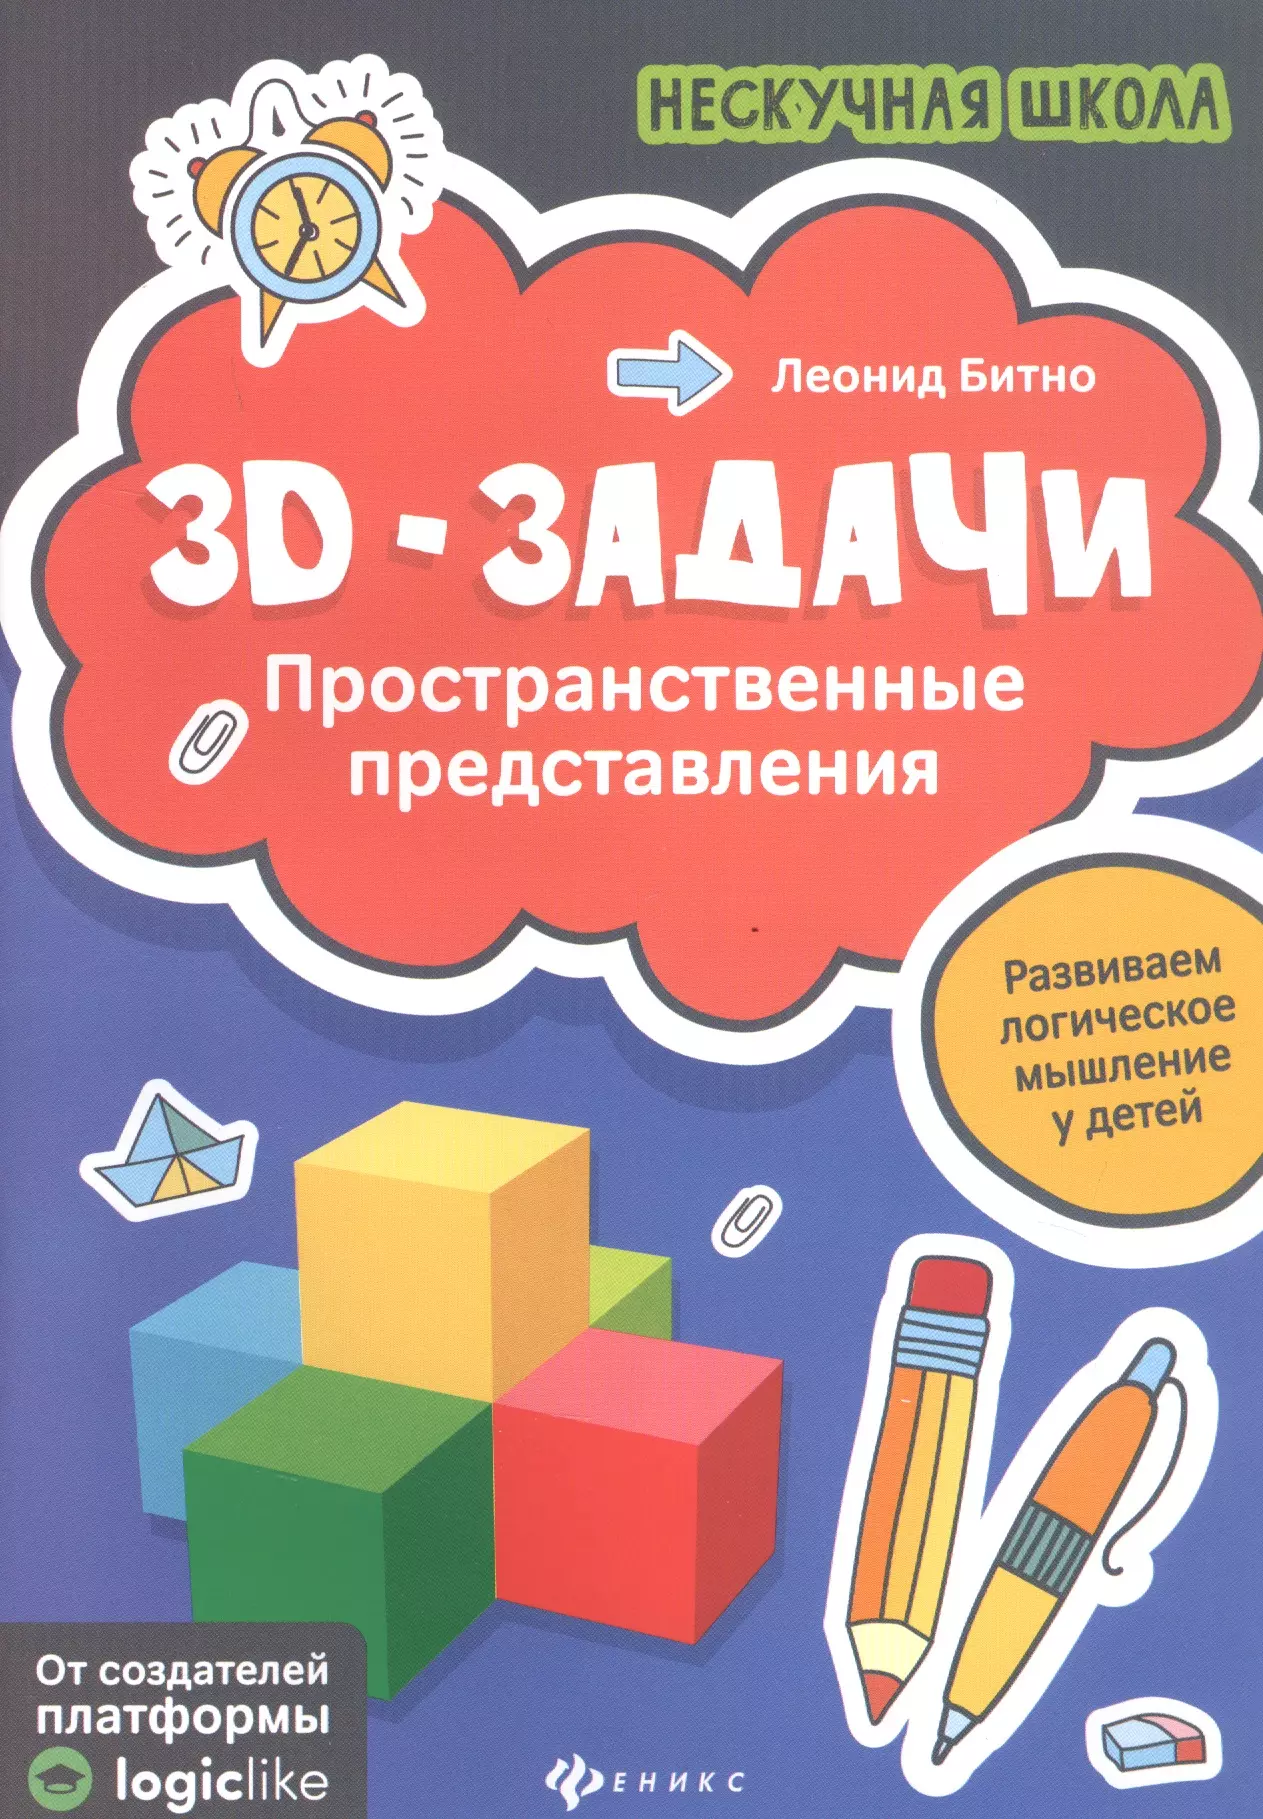 Битно Леонид Григорьевич - 3D-задачи. Пространственные представления